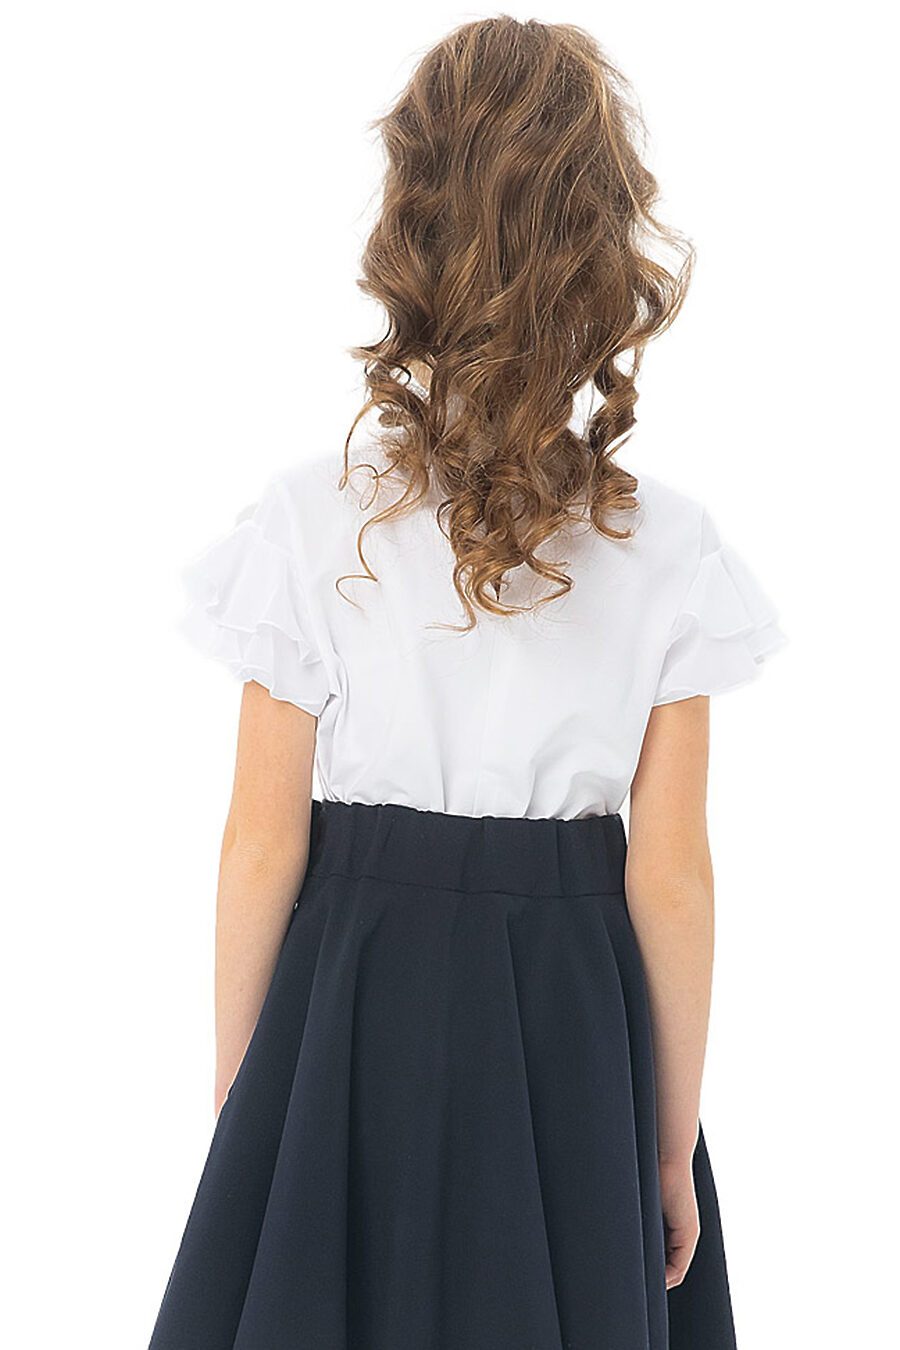 Блуза КАРАМЕЛЛИ (683307), купить в Moyo.moda